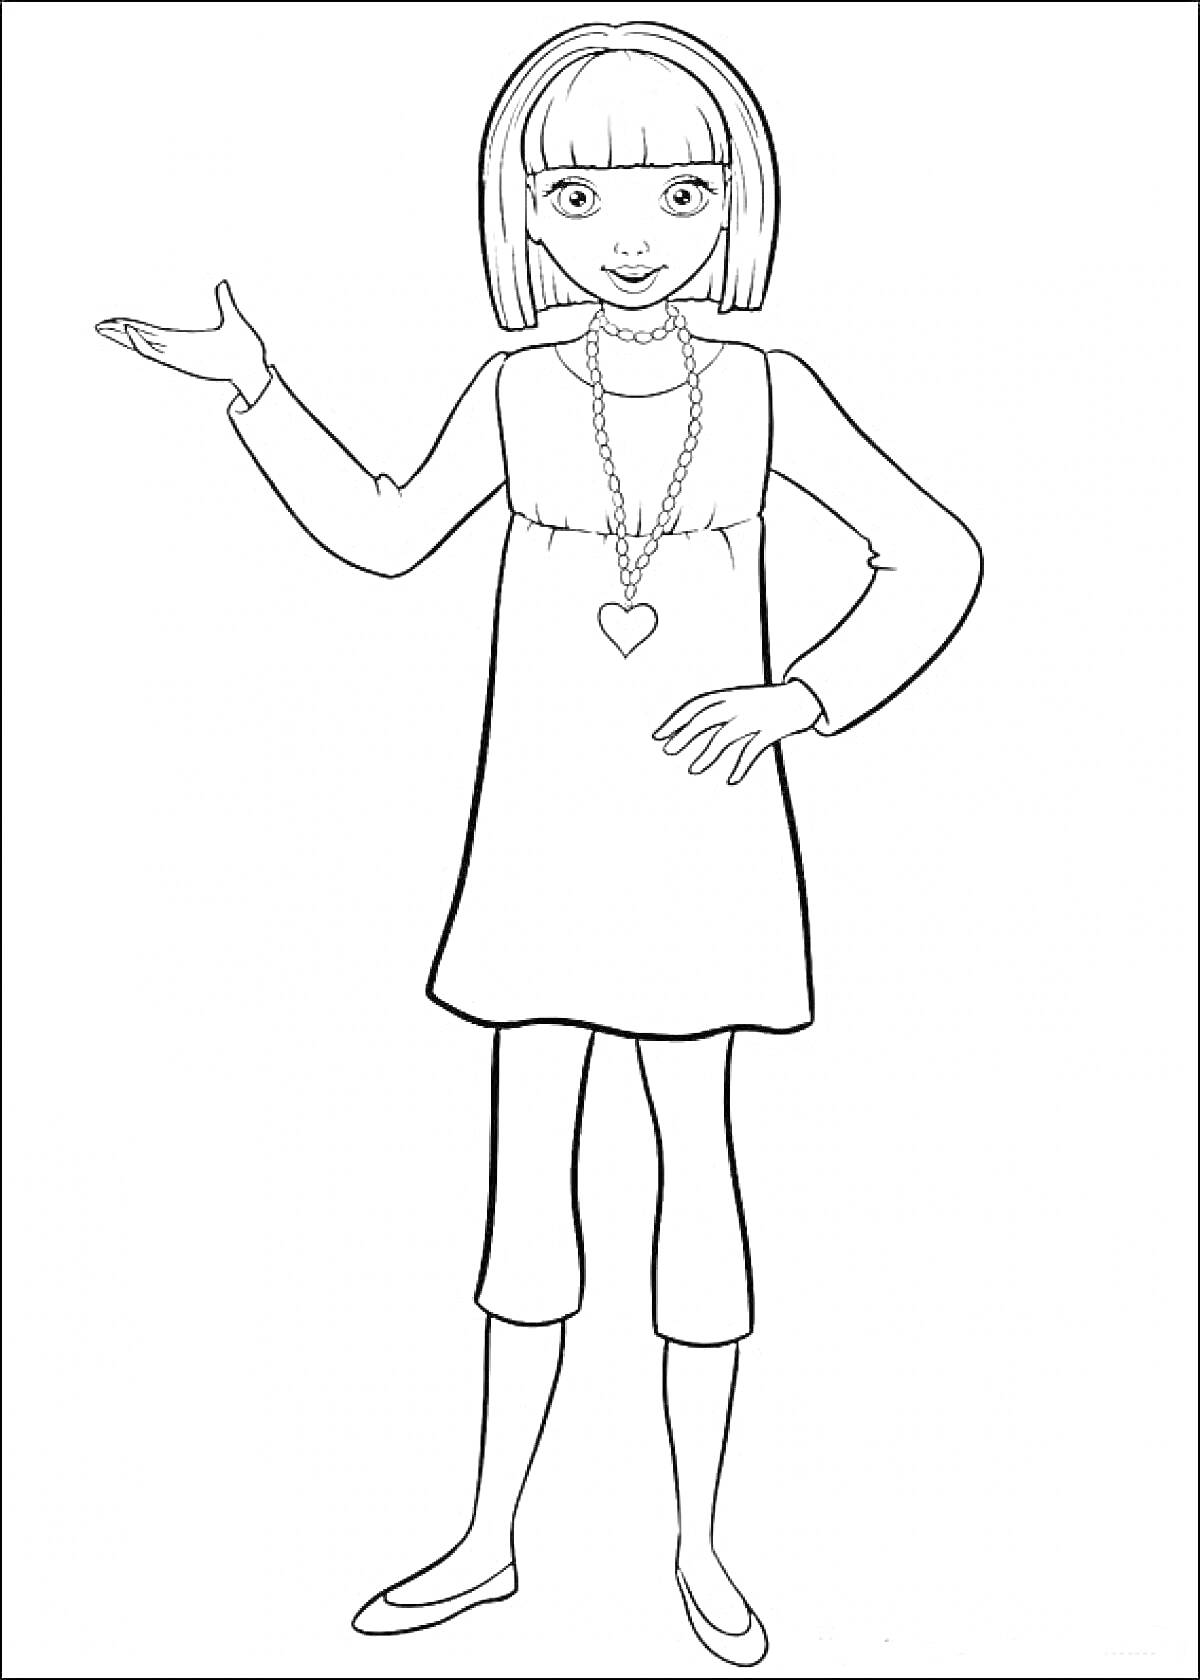 Барби Дюймовочка в платье и брюках, с ожерельем в форме сердца, смотрит вперед, подняв одну руку